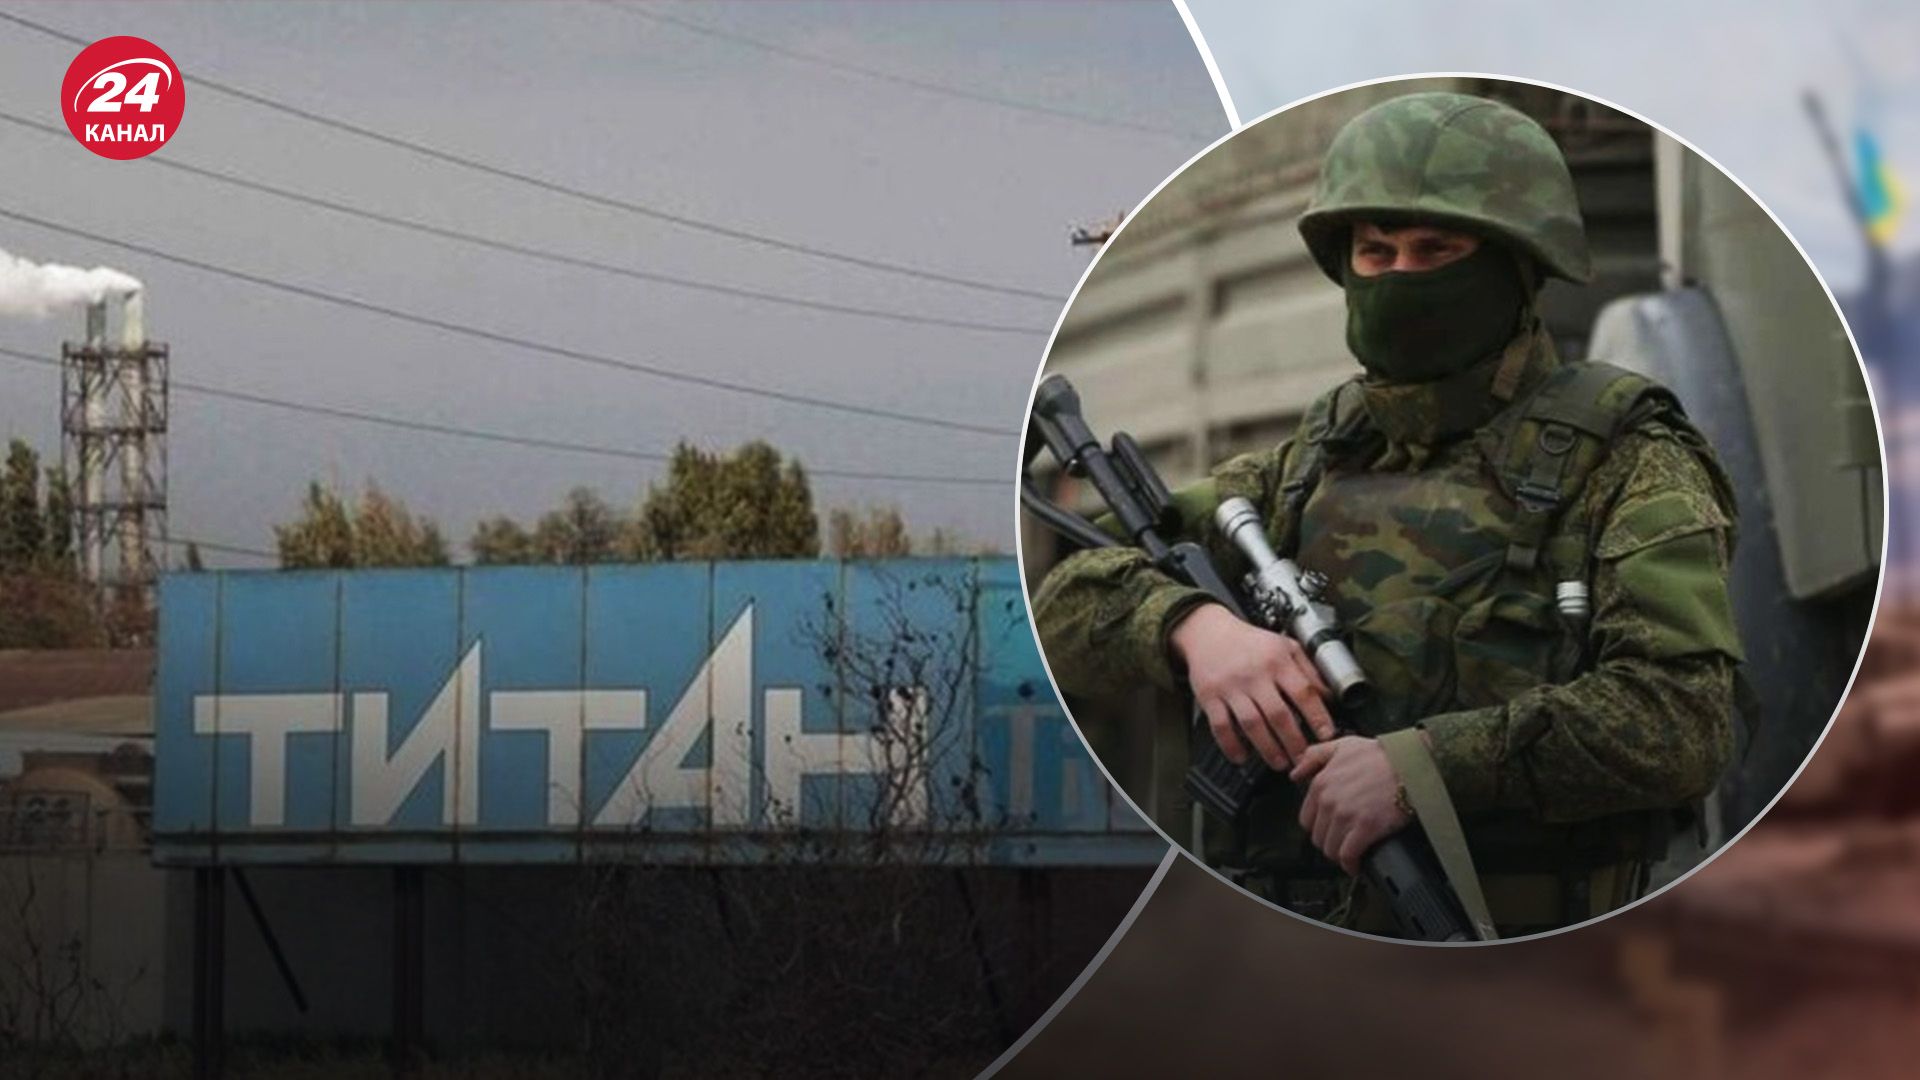 "Будет второй Чернобыль": украинцев предупреждают о возможной провокации россиян на заводе в Крыму - 24 Канал